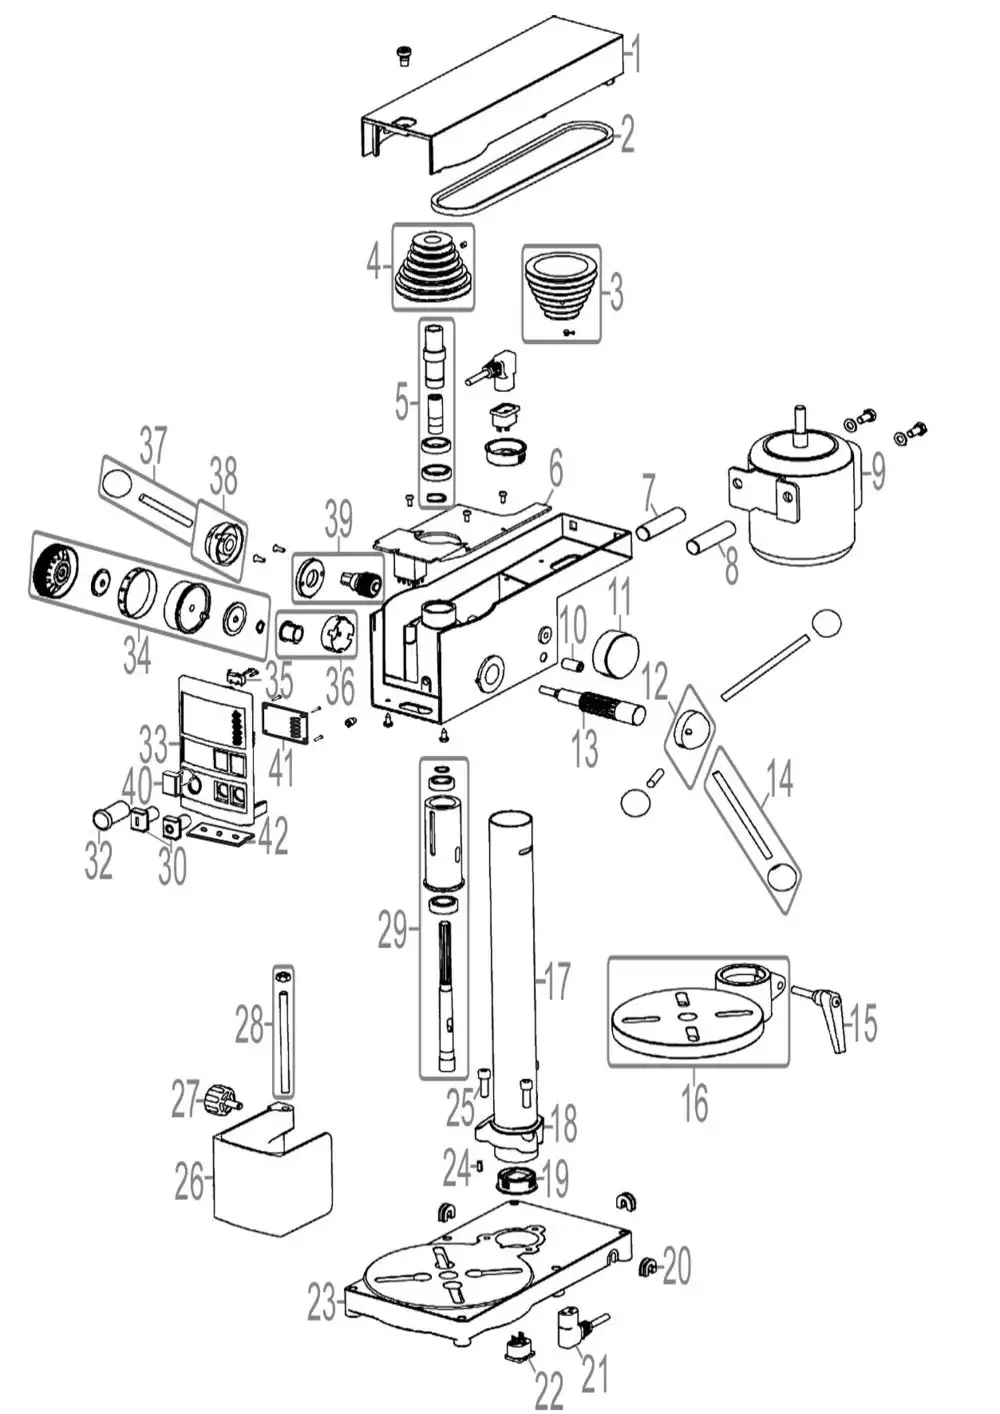 Zeichnung - GDE Tischbohrmaschine GTB 14 PRO - 55216